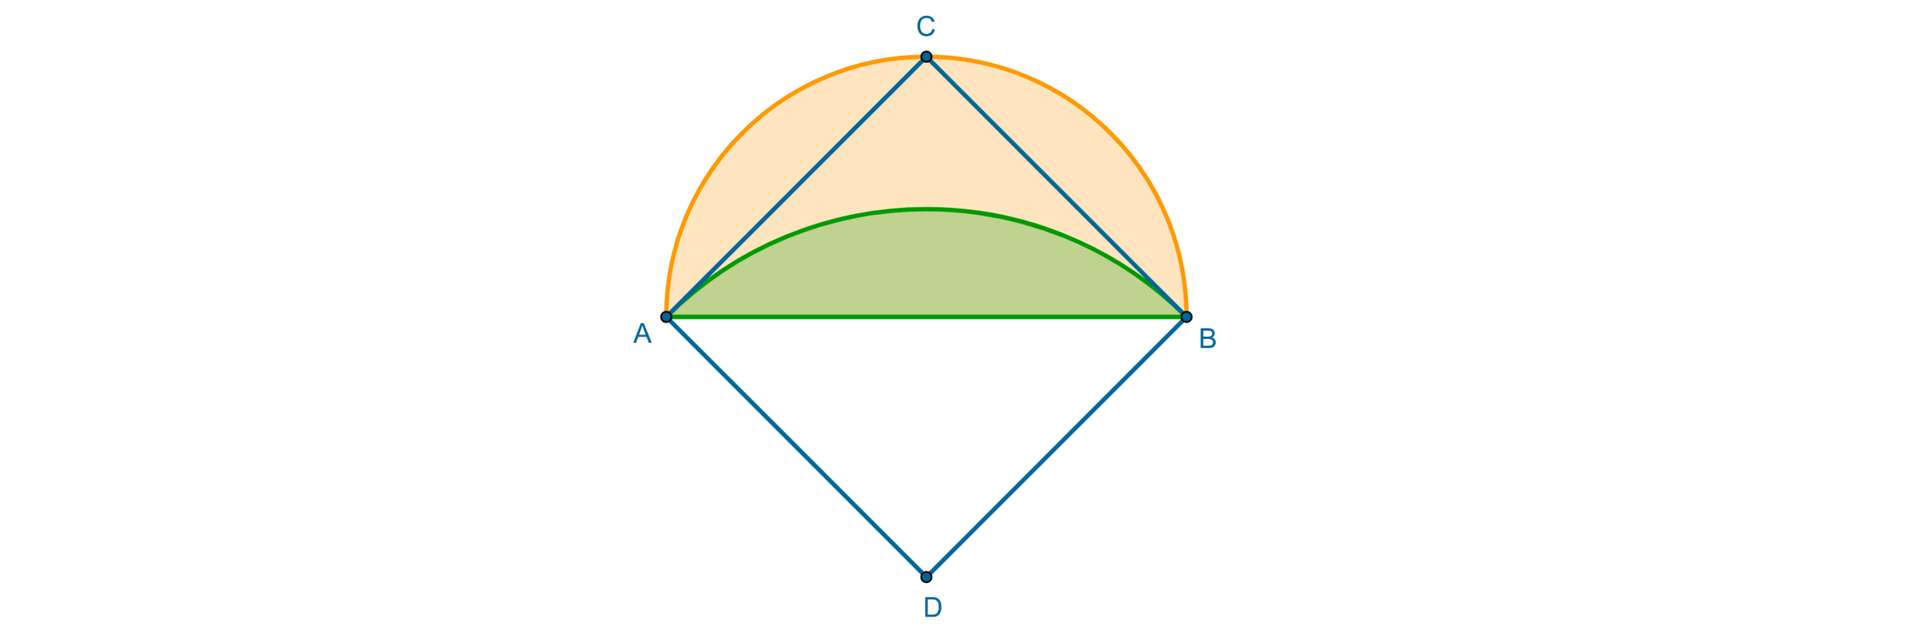 Rysunek przedstawia kwadrat A D B C. Zaznaczone zostało półkole A C B opisane na kwadracie. Średnica półkola AB jest równa przekątnej kwadratu. Poprowadzono łuk o środku w punkcie D, gdzie D jest środkiem średnicy AB  i promieniu DA równym DB. Obszar pomiędzy łukiem A C B  a wykreślonym łukiem jest obszarem lunuli trójkątnej.